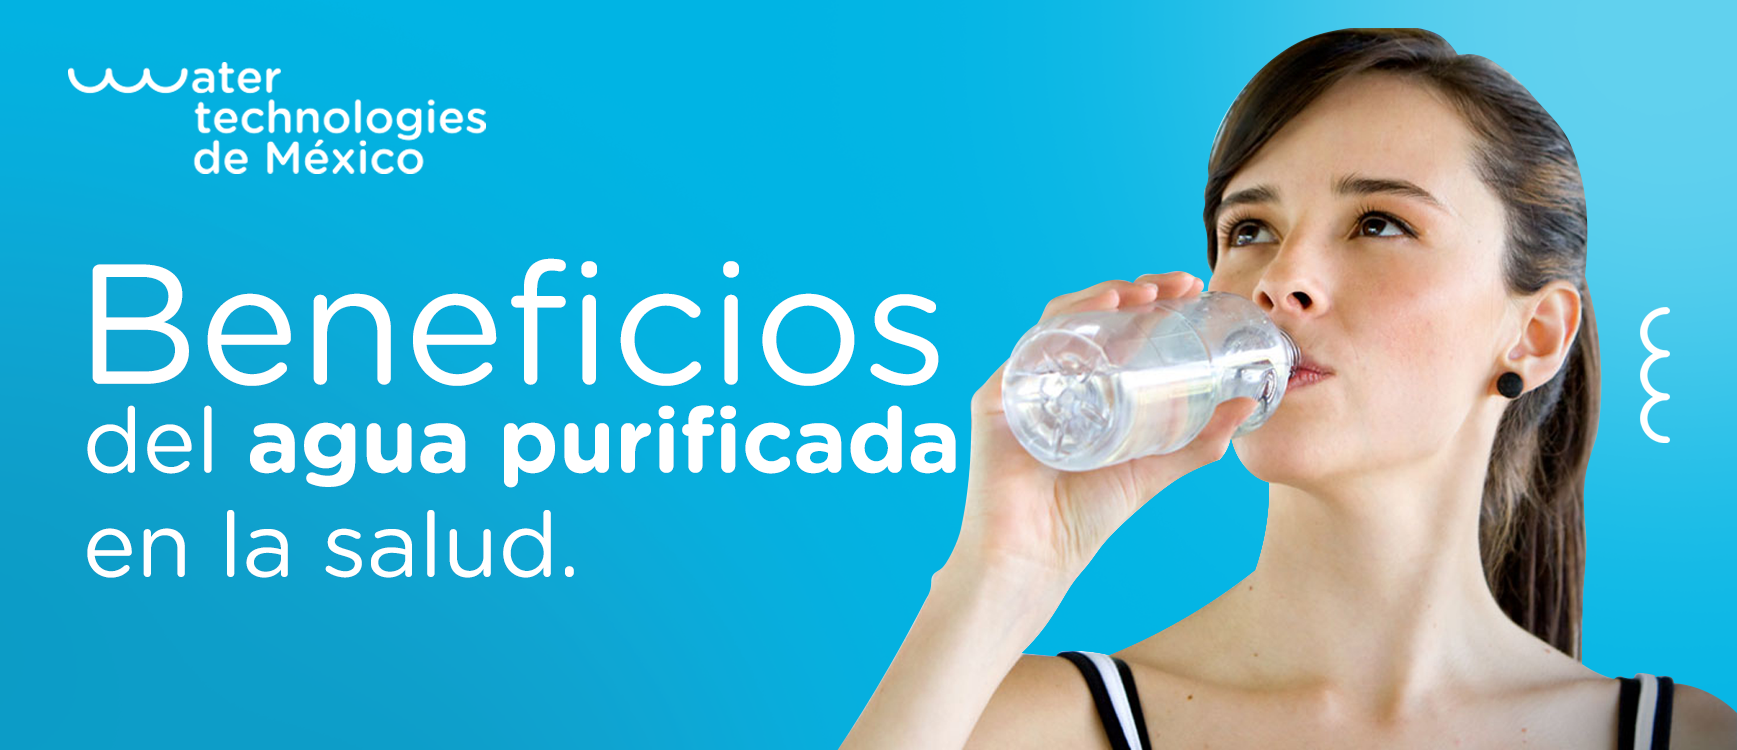 Beneficios del agua purificada en la salud.